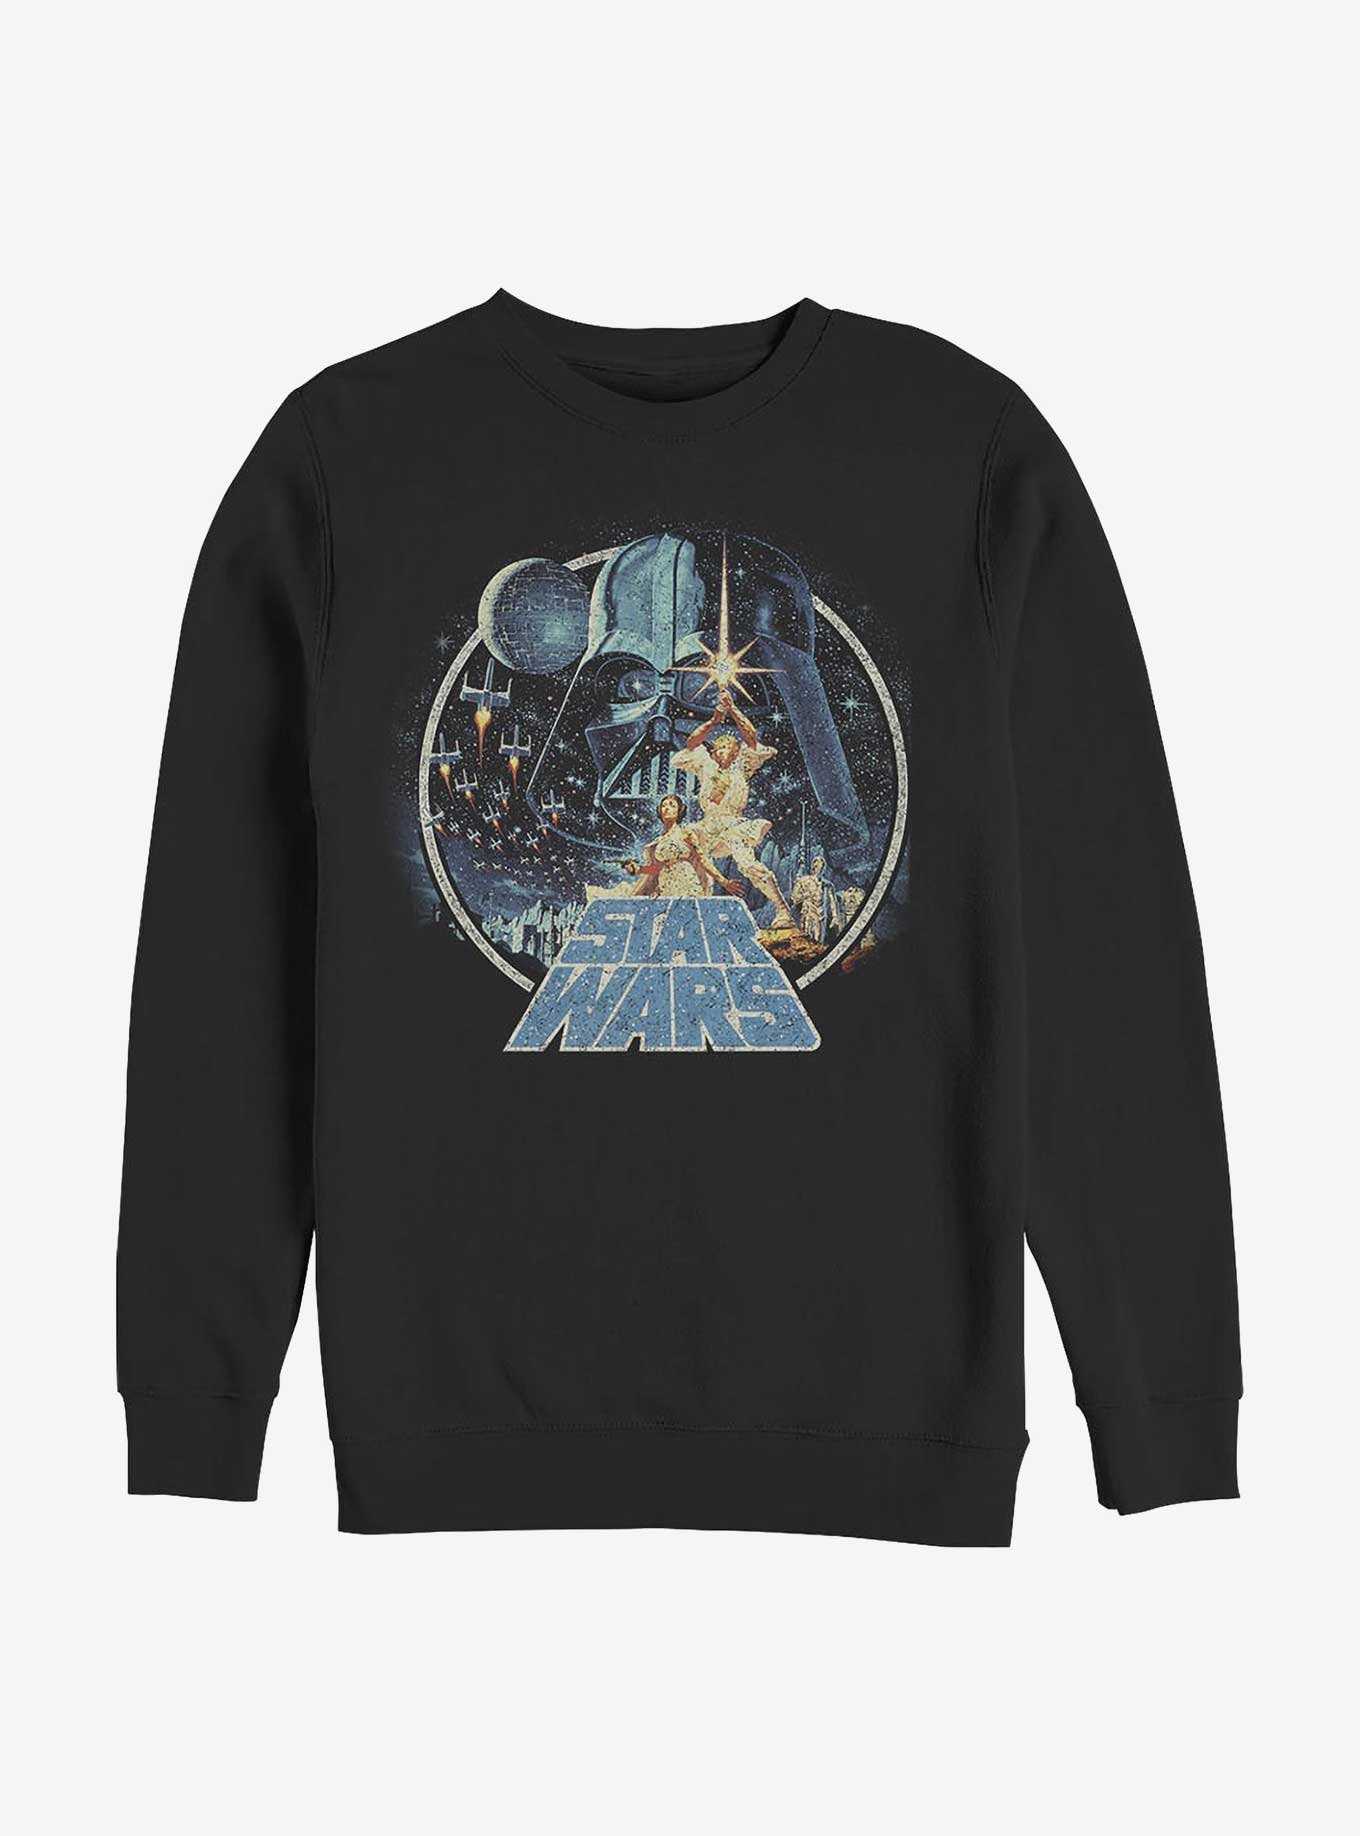 Star Wars Vintage Victory Sweatshirt, , hi-res